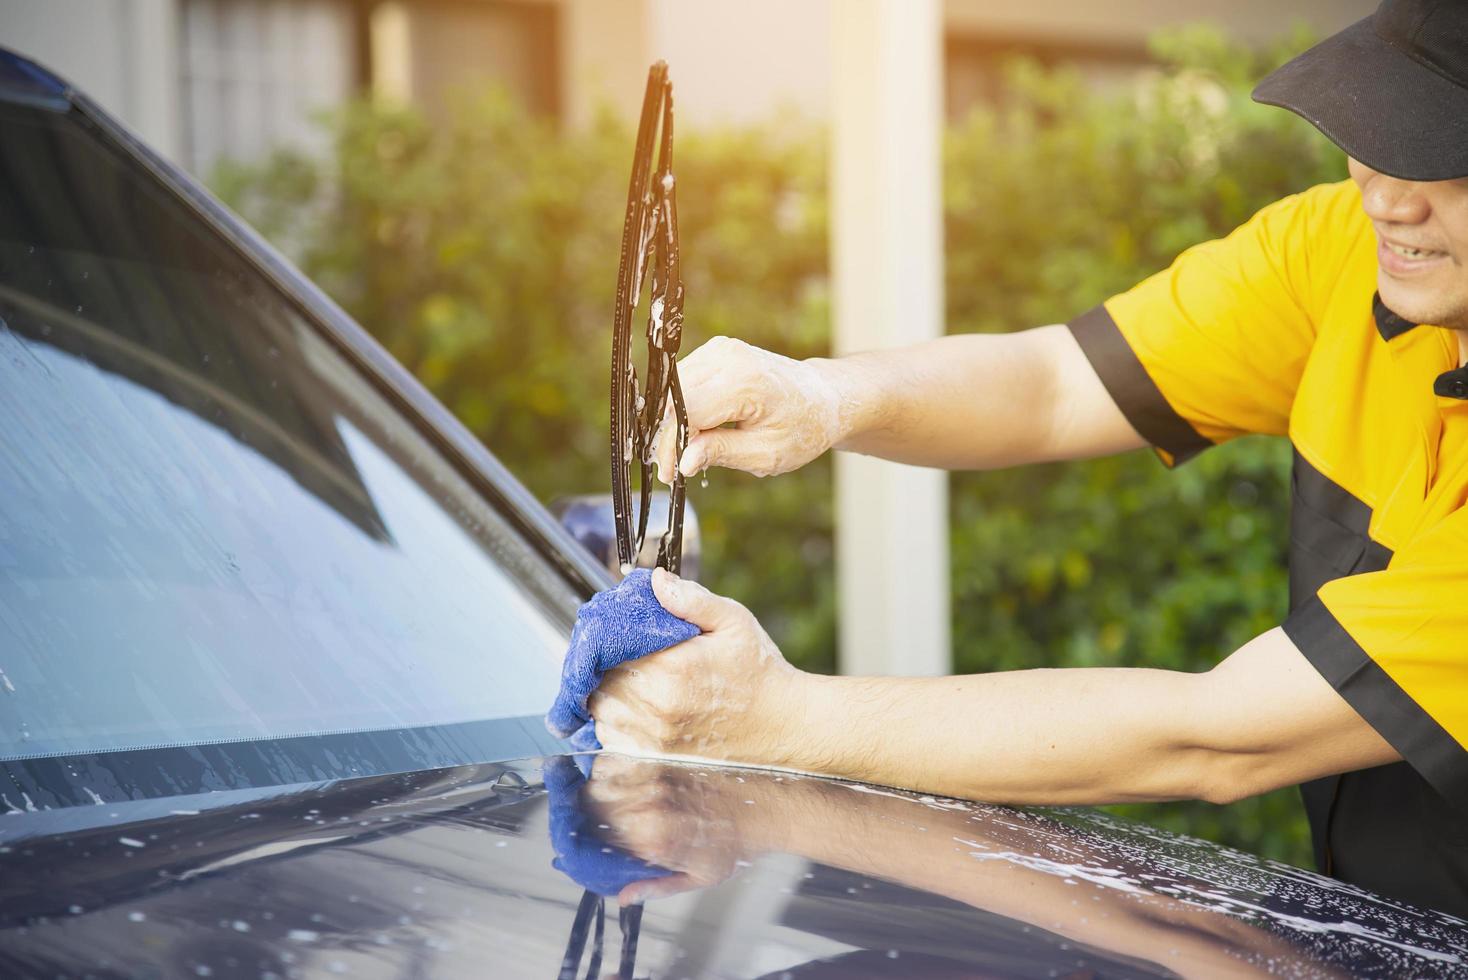 homem lavar carro usando shampoo - conceito de cuidado de carro de vida diária foto